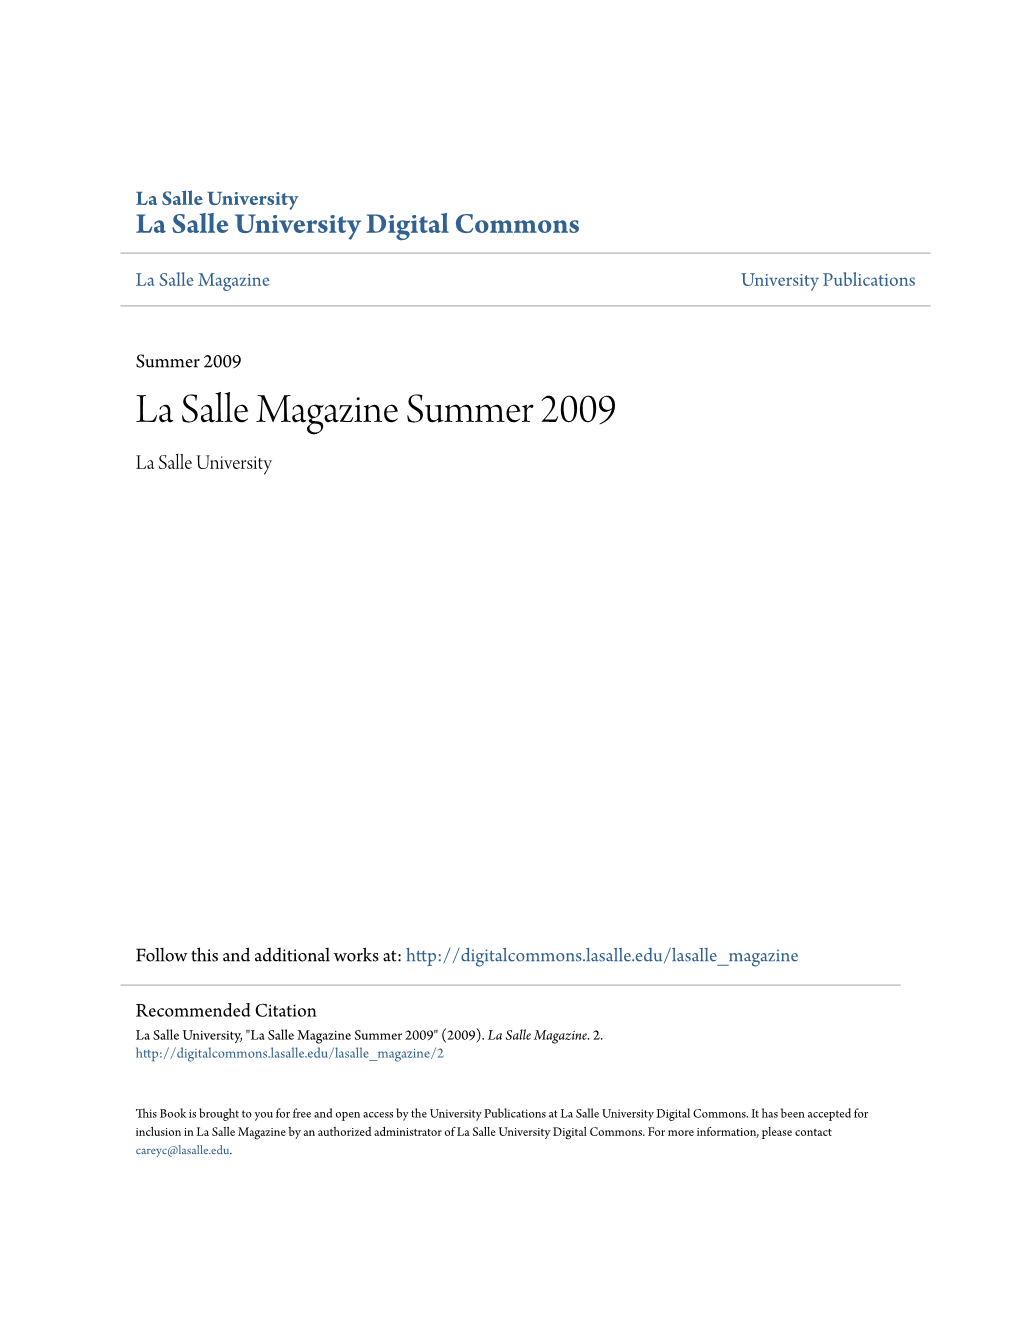 La Salle Magazine Summer 2009 La Salle University